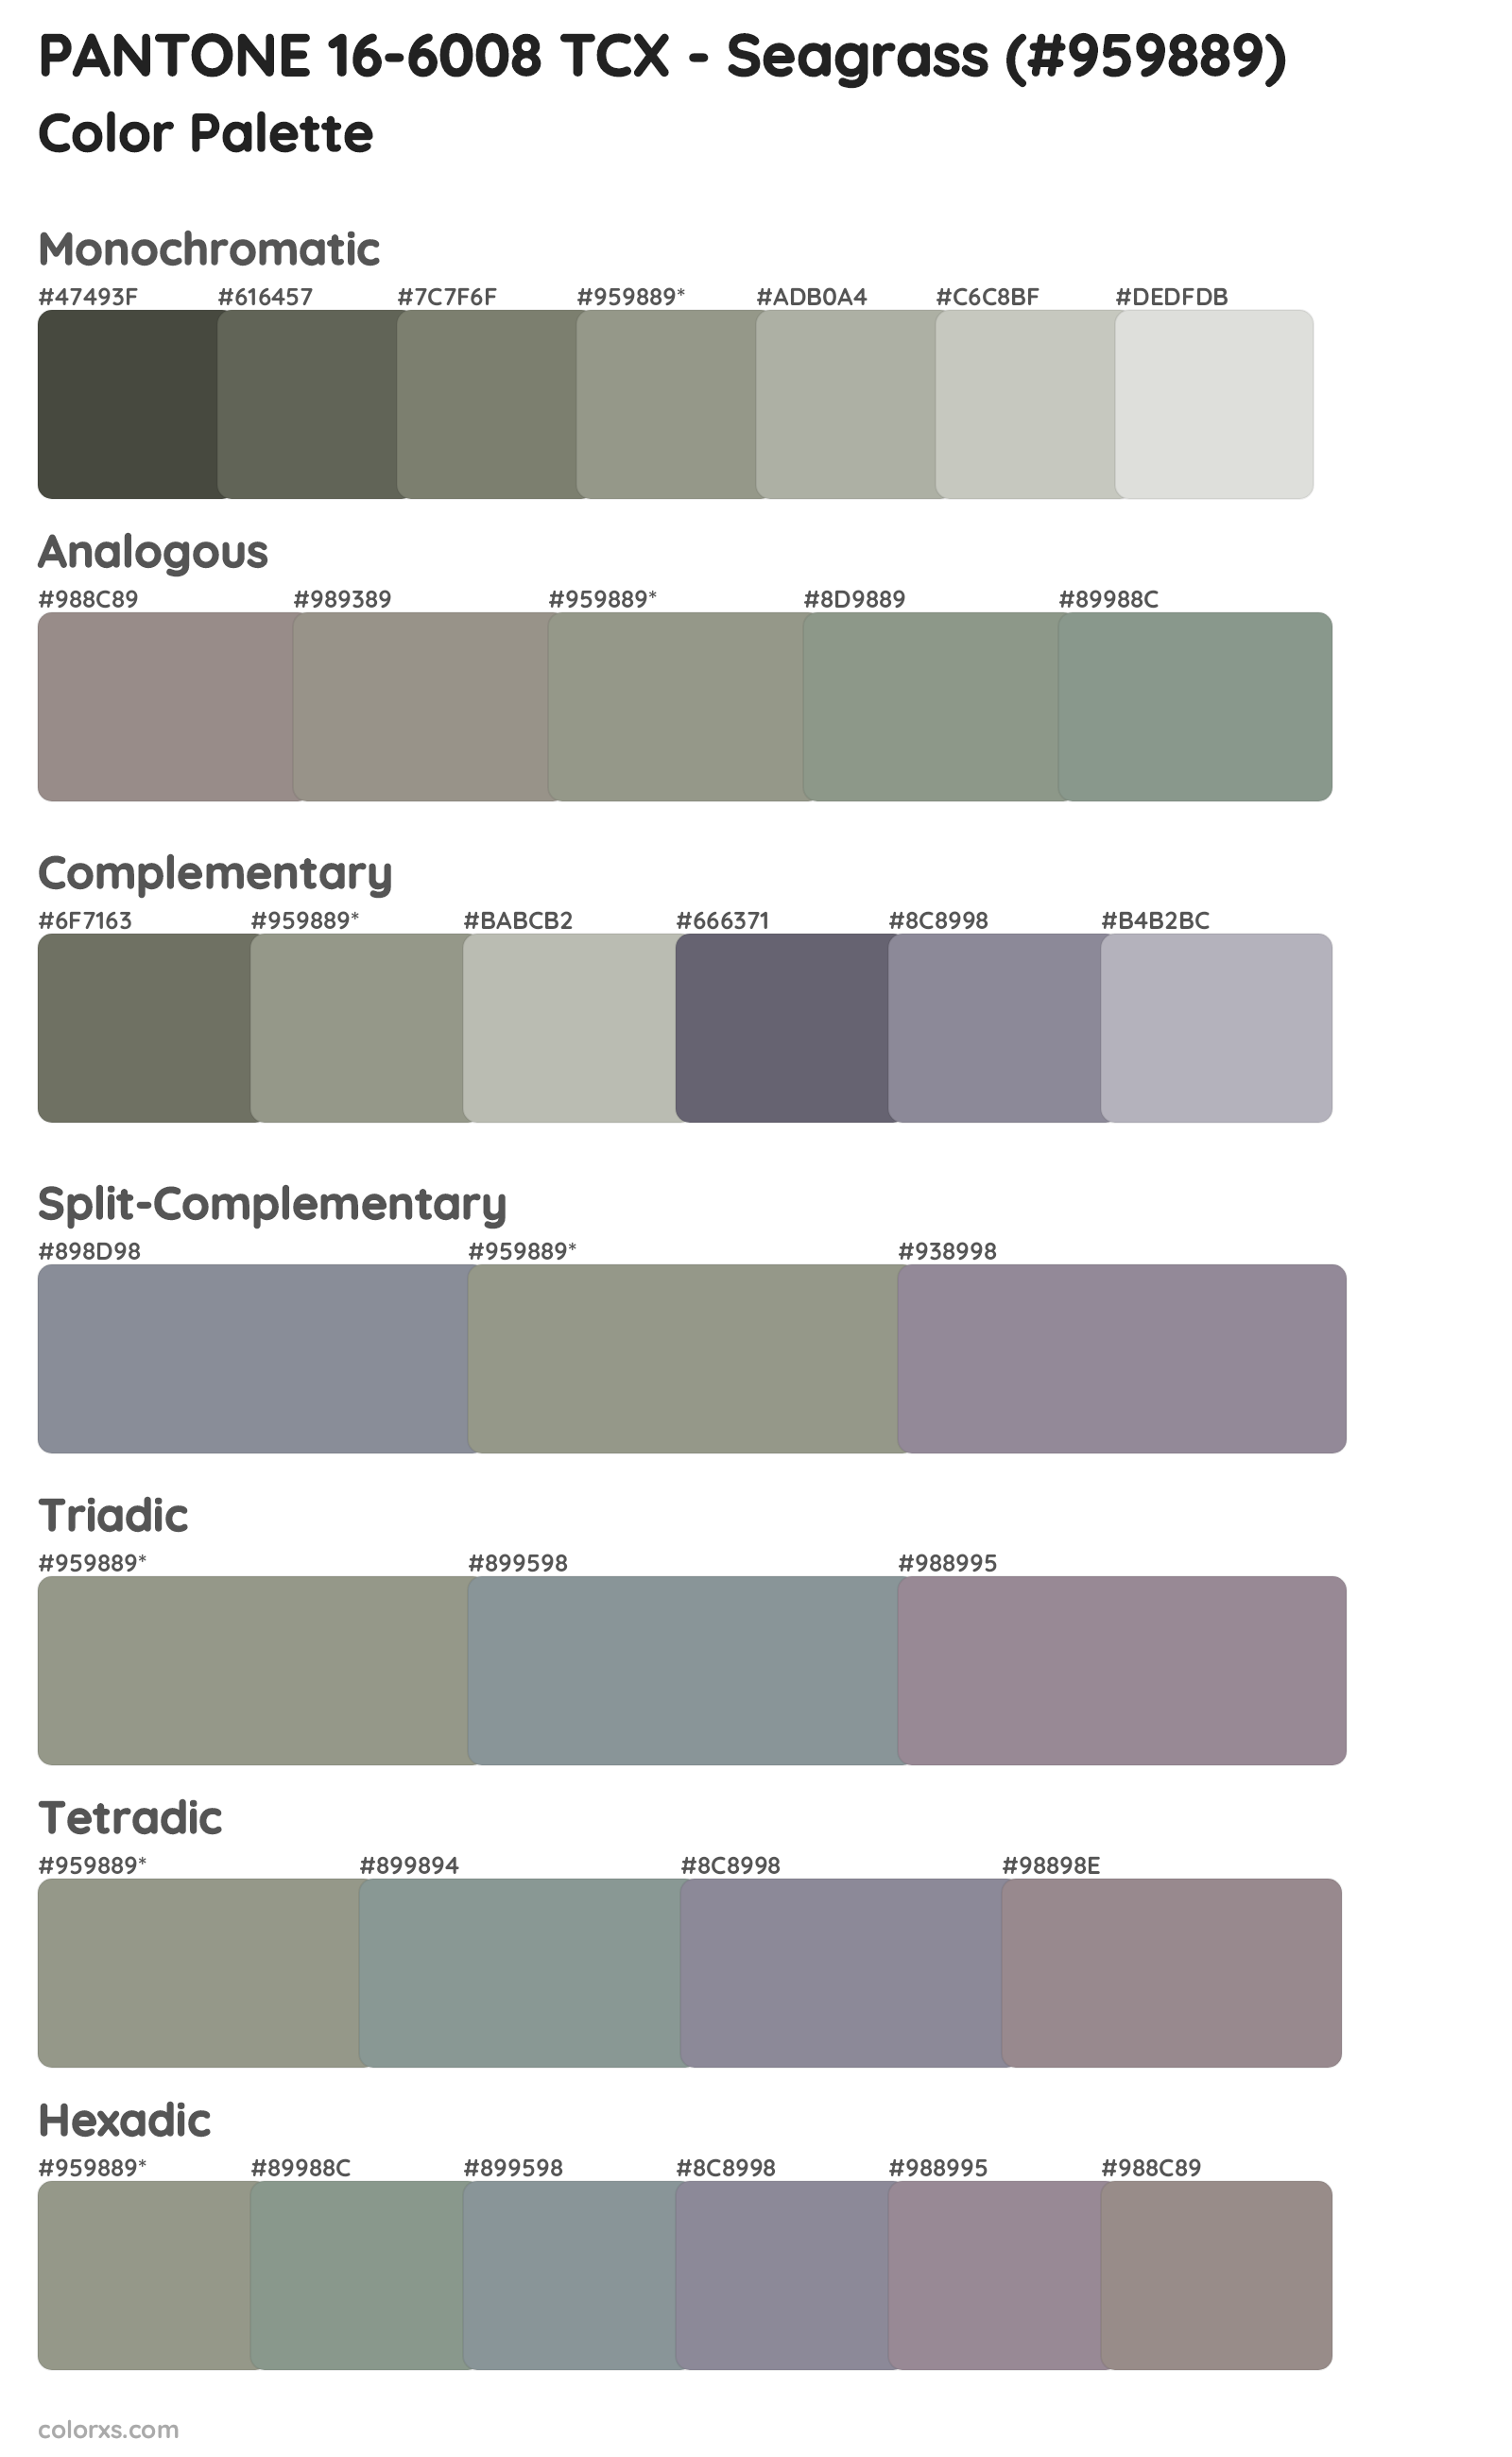 PANTONE 16-6008 TCX - Seagrass Color Scheme Palettes